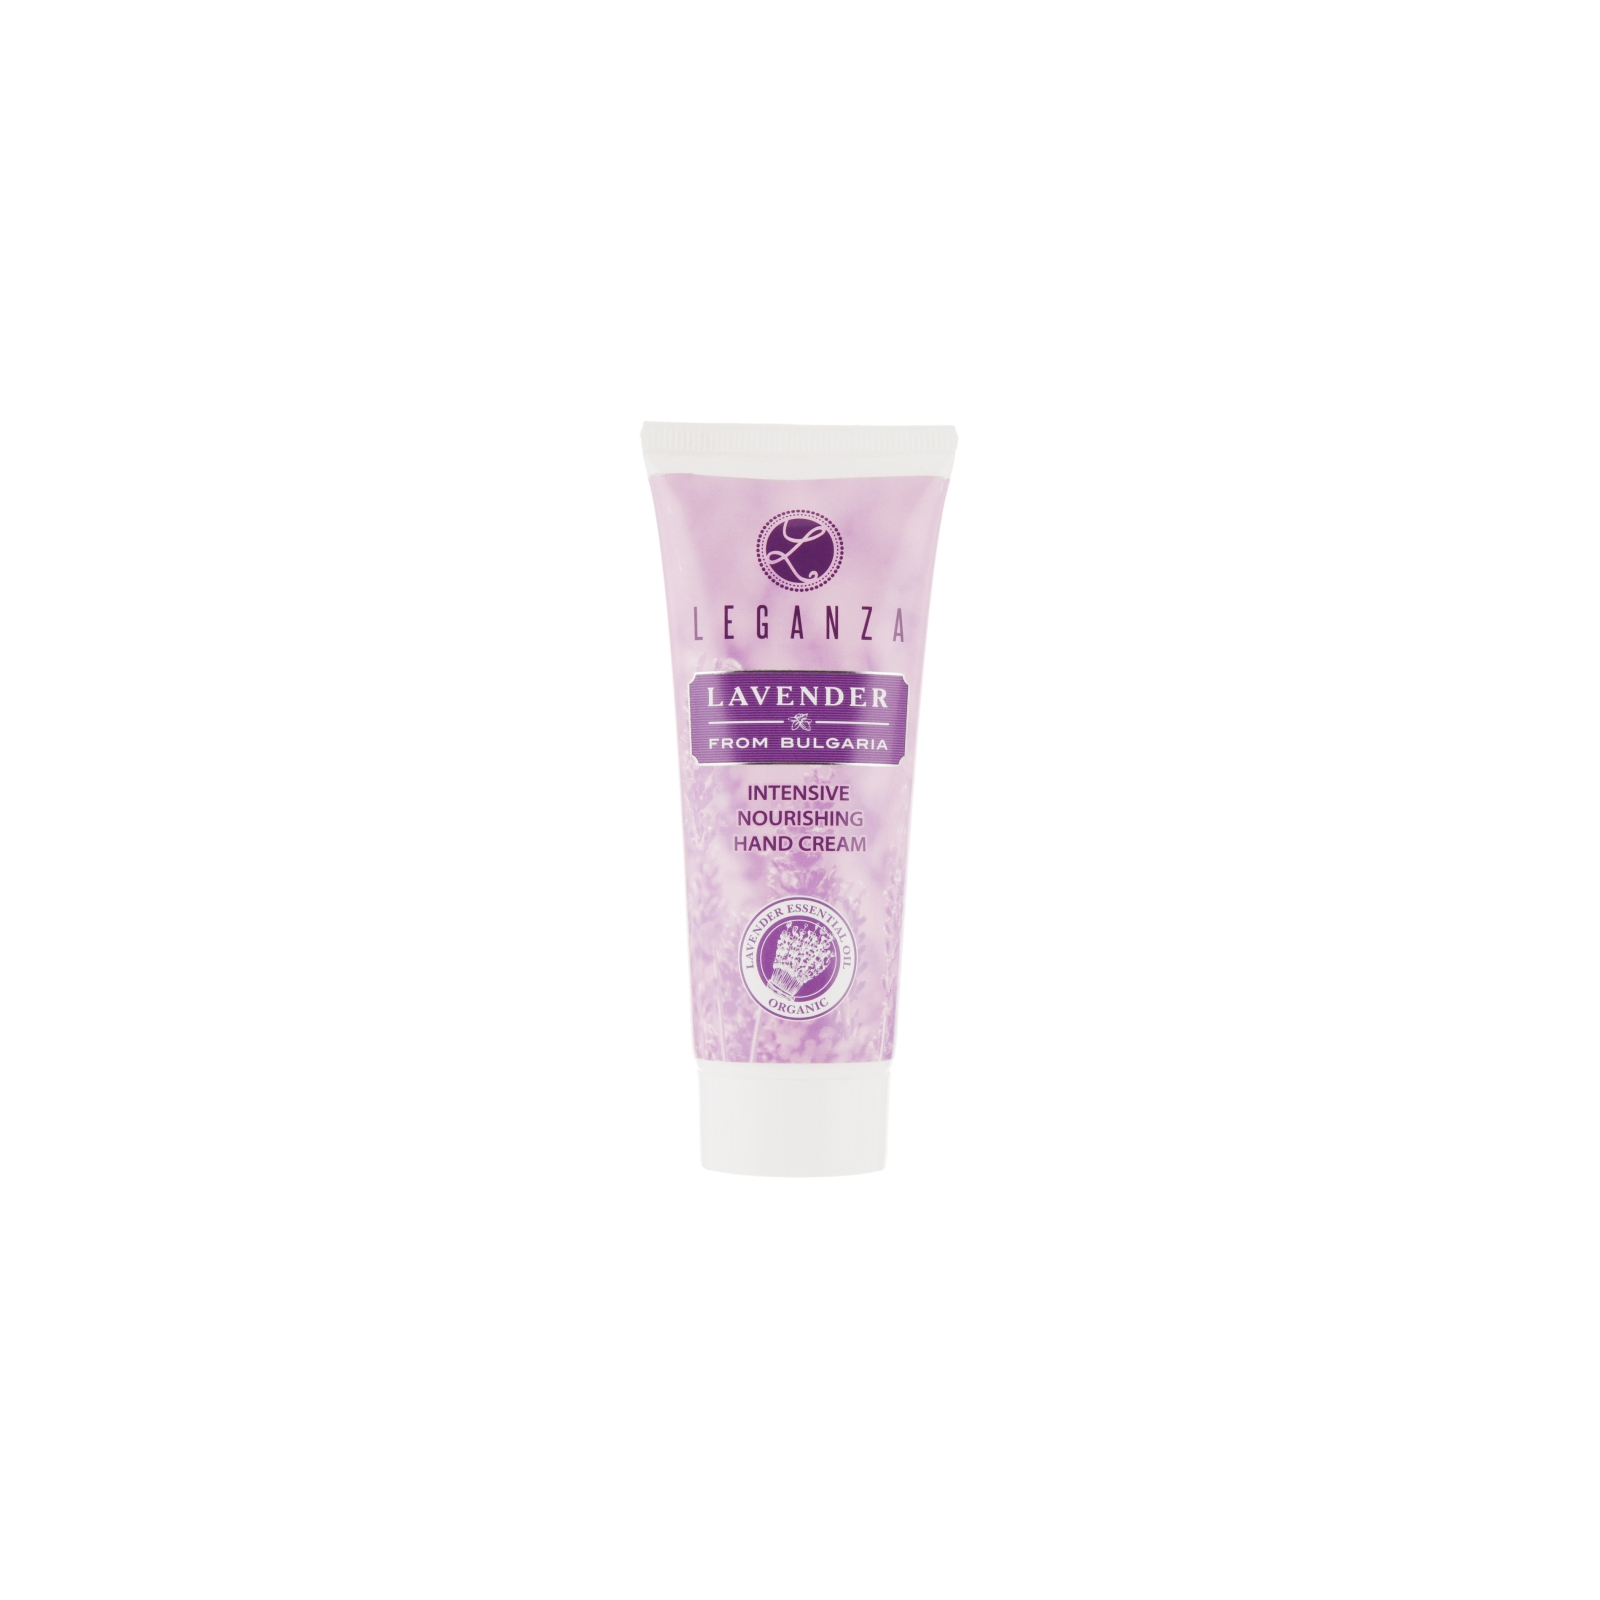 Крем для рук Leganza Lavender Intensive Nourishing Hand Cream Интенсивный питательный 75 мл (3800010525626)